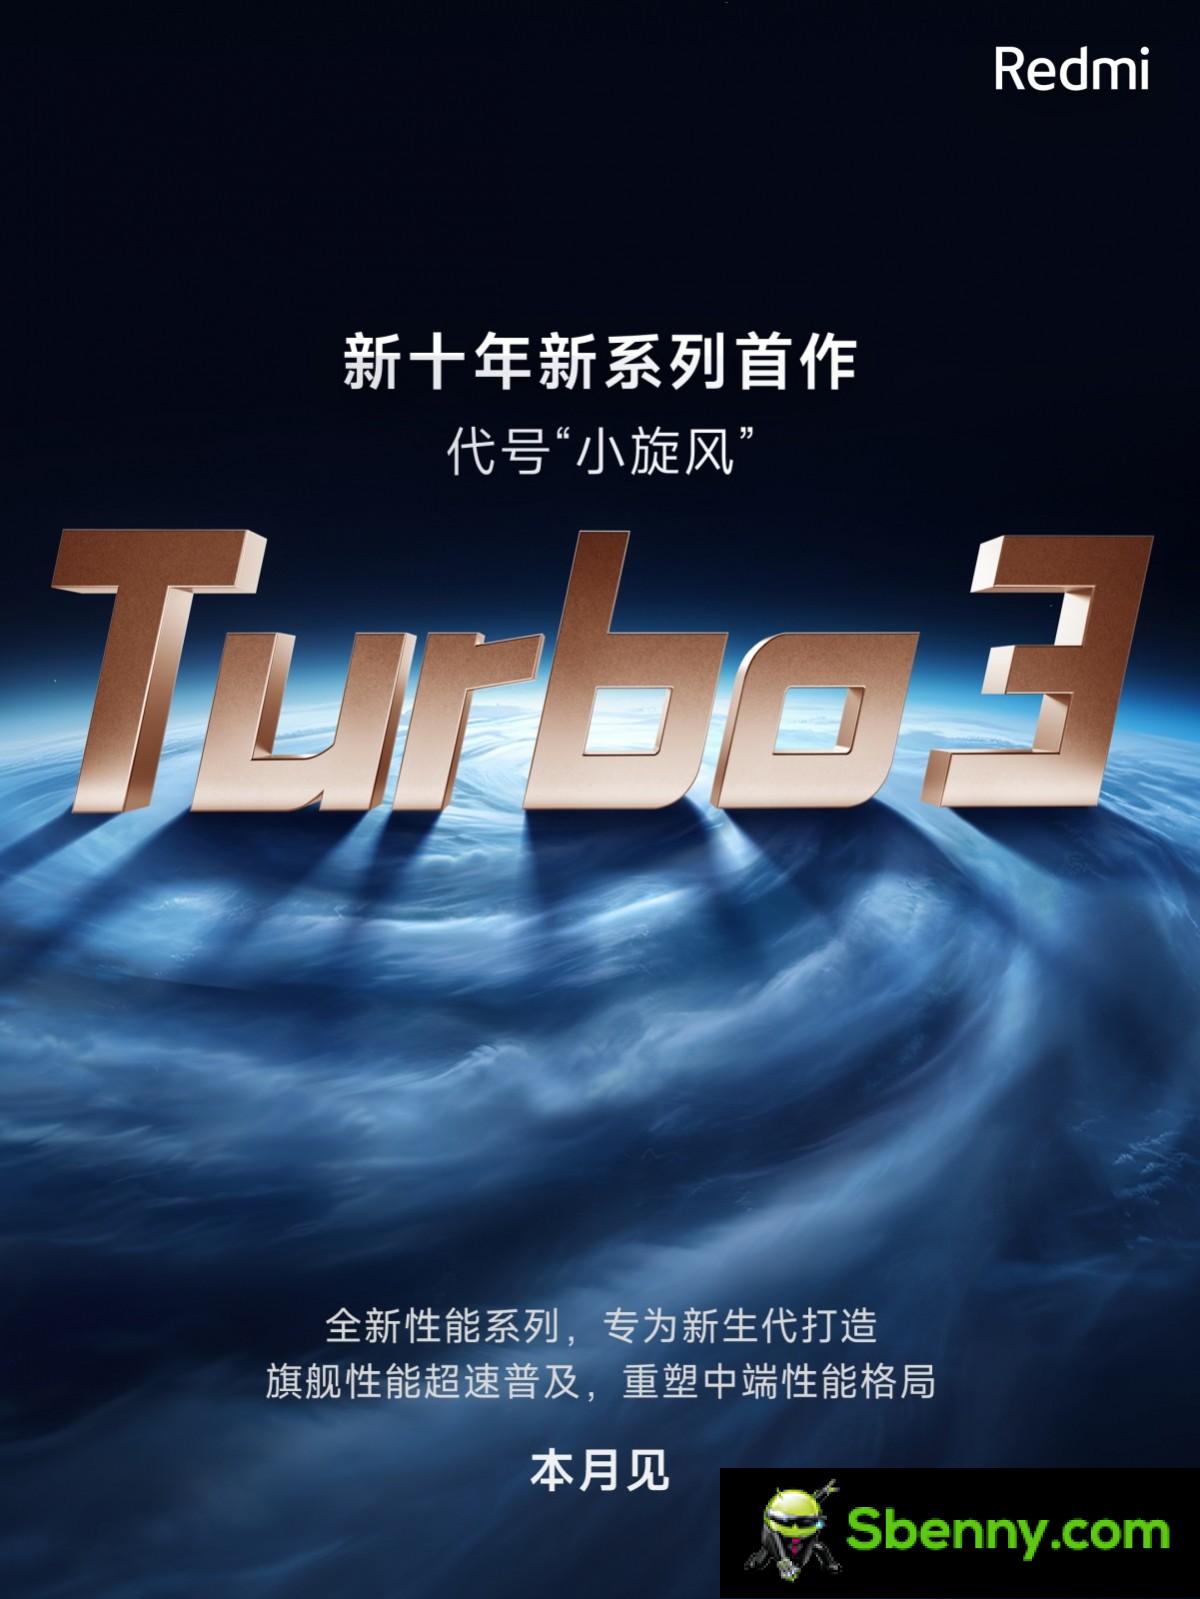 Redmi ogłasza Turbo 3 jako część nowej generacji flagowej serii o wysokiej wydajności